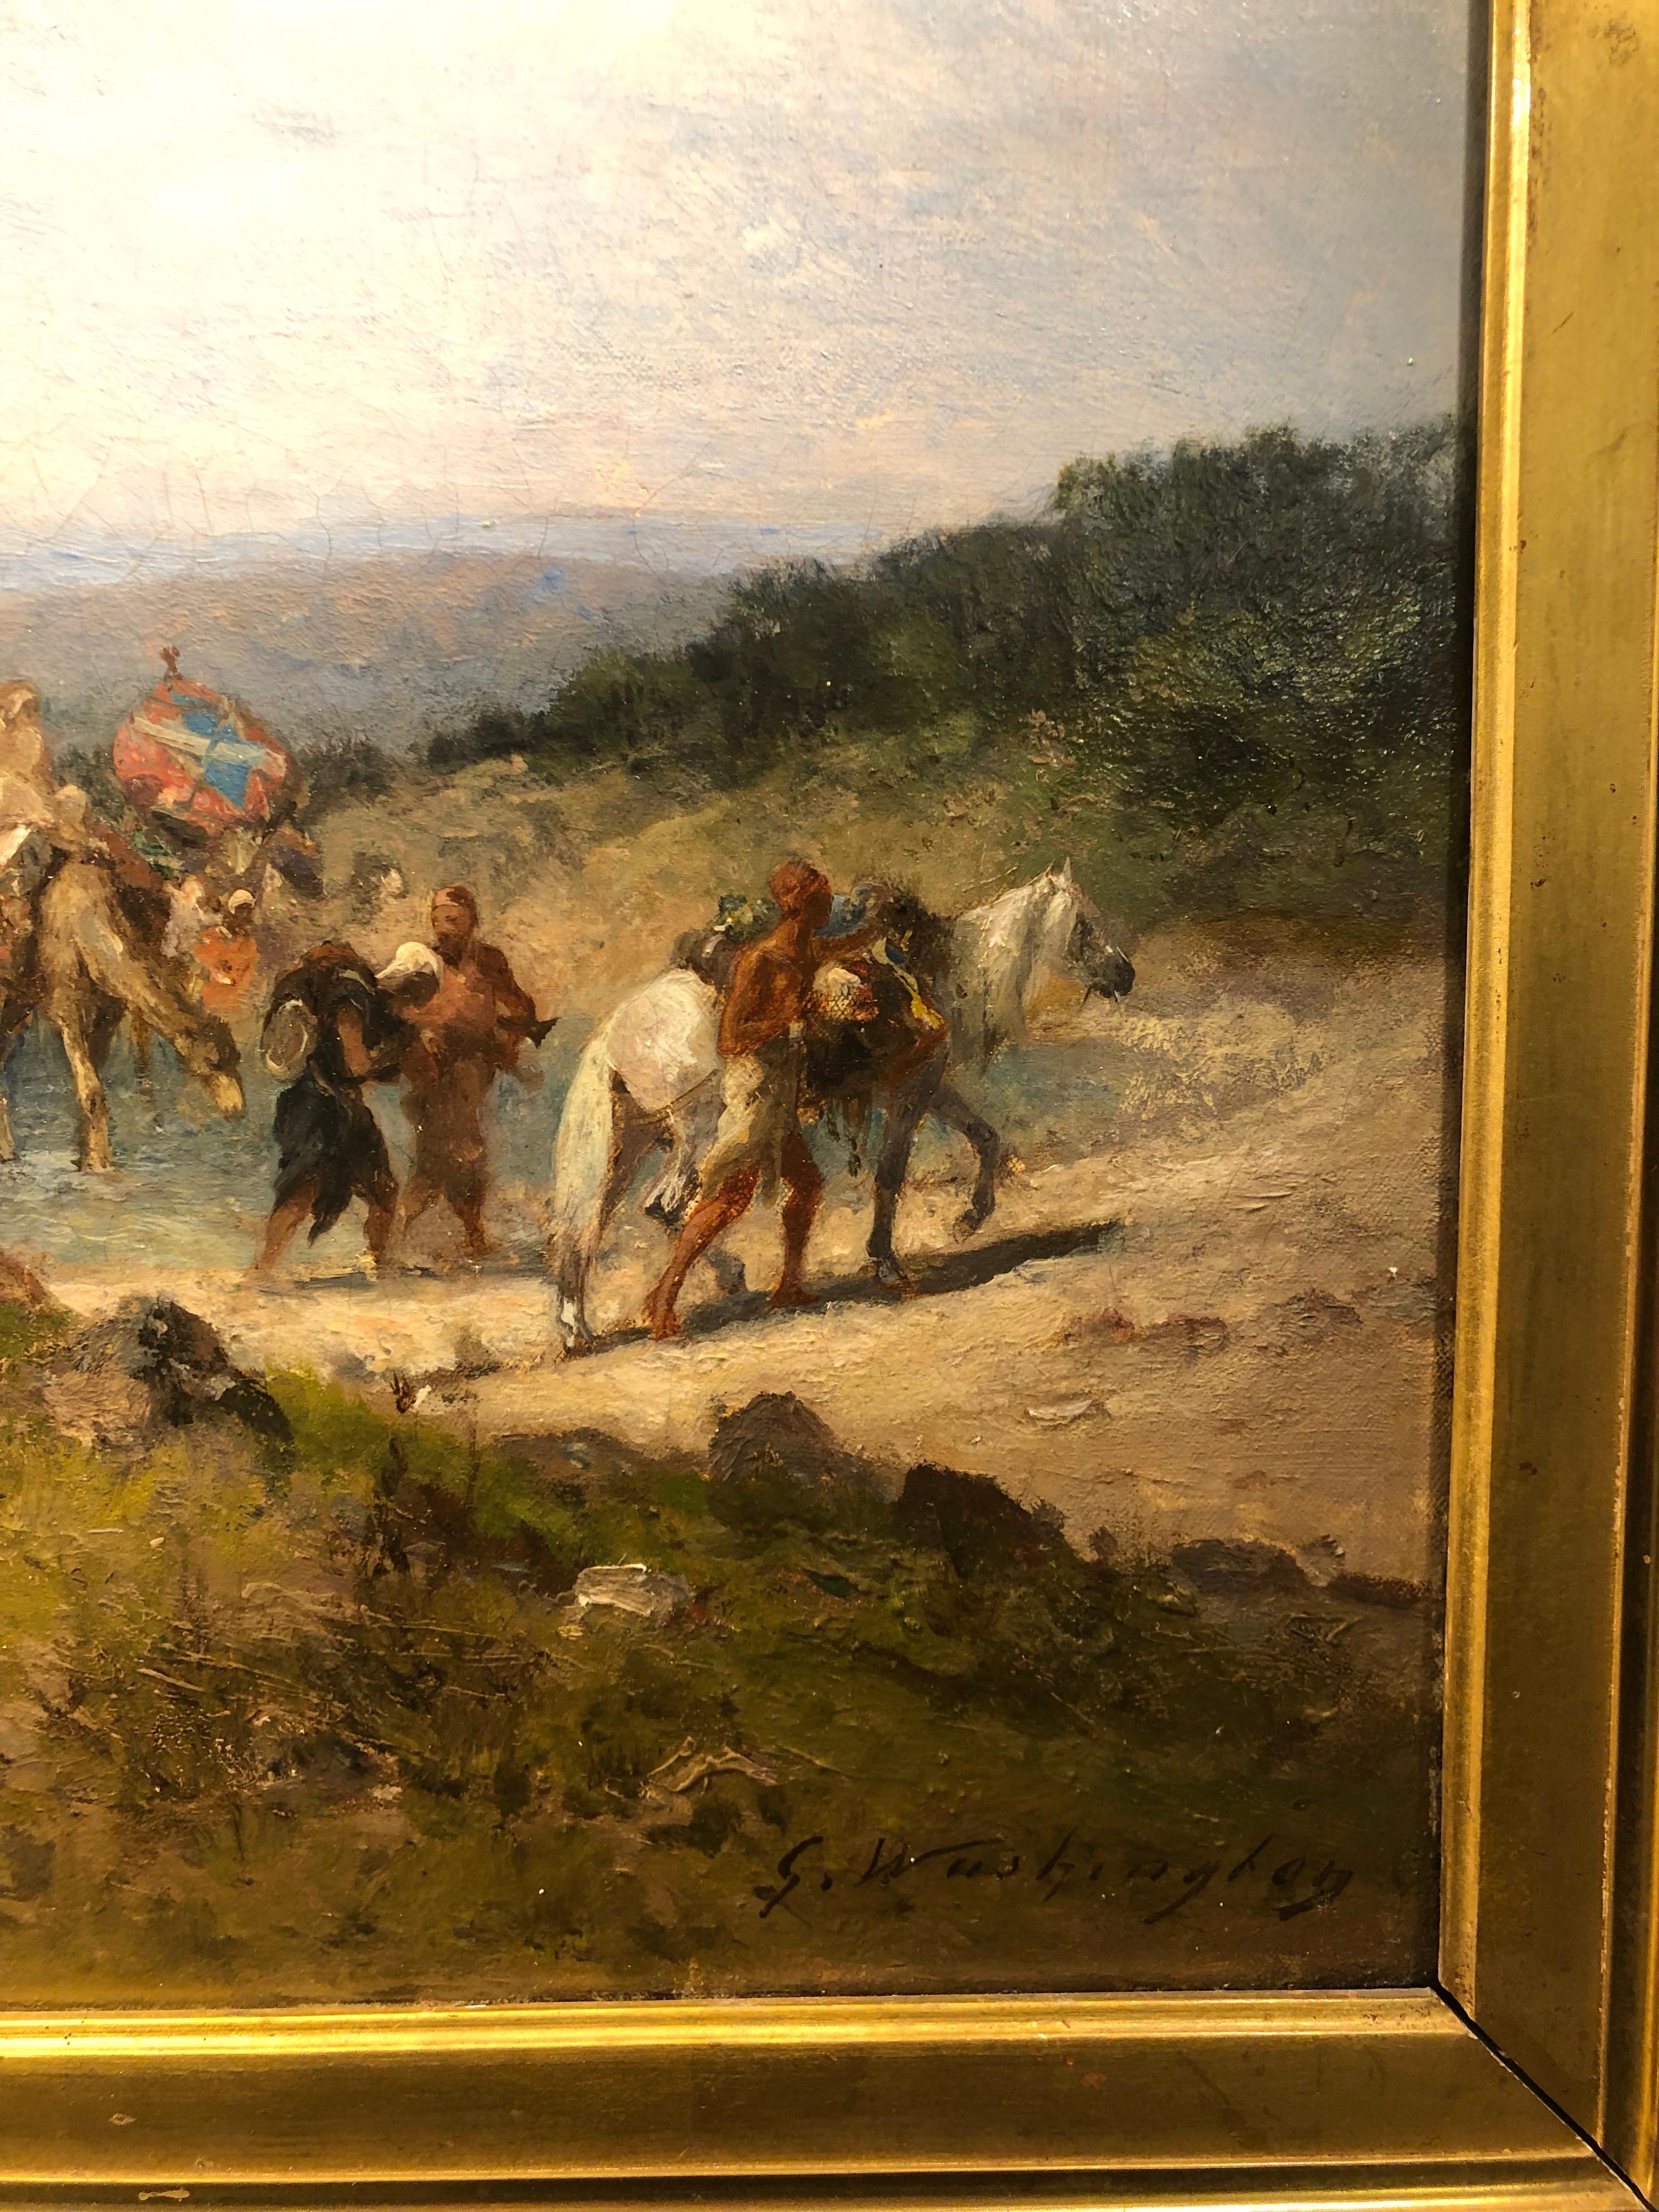 Le Voyage - Halte au bord de l'Oued  - Painting by Georges Washington